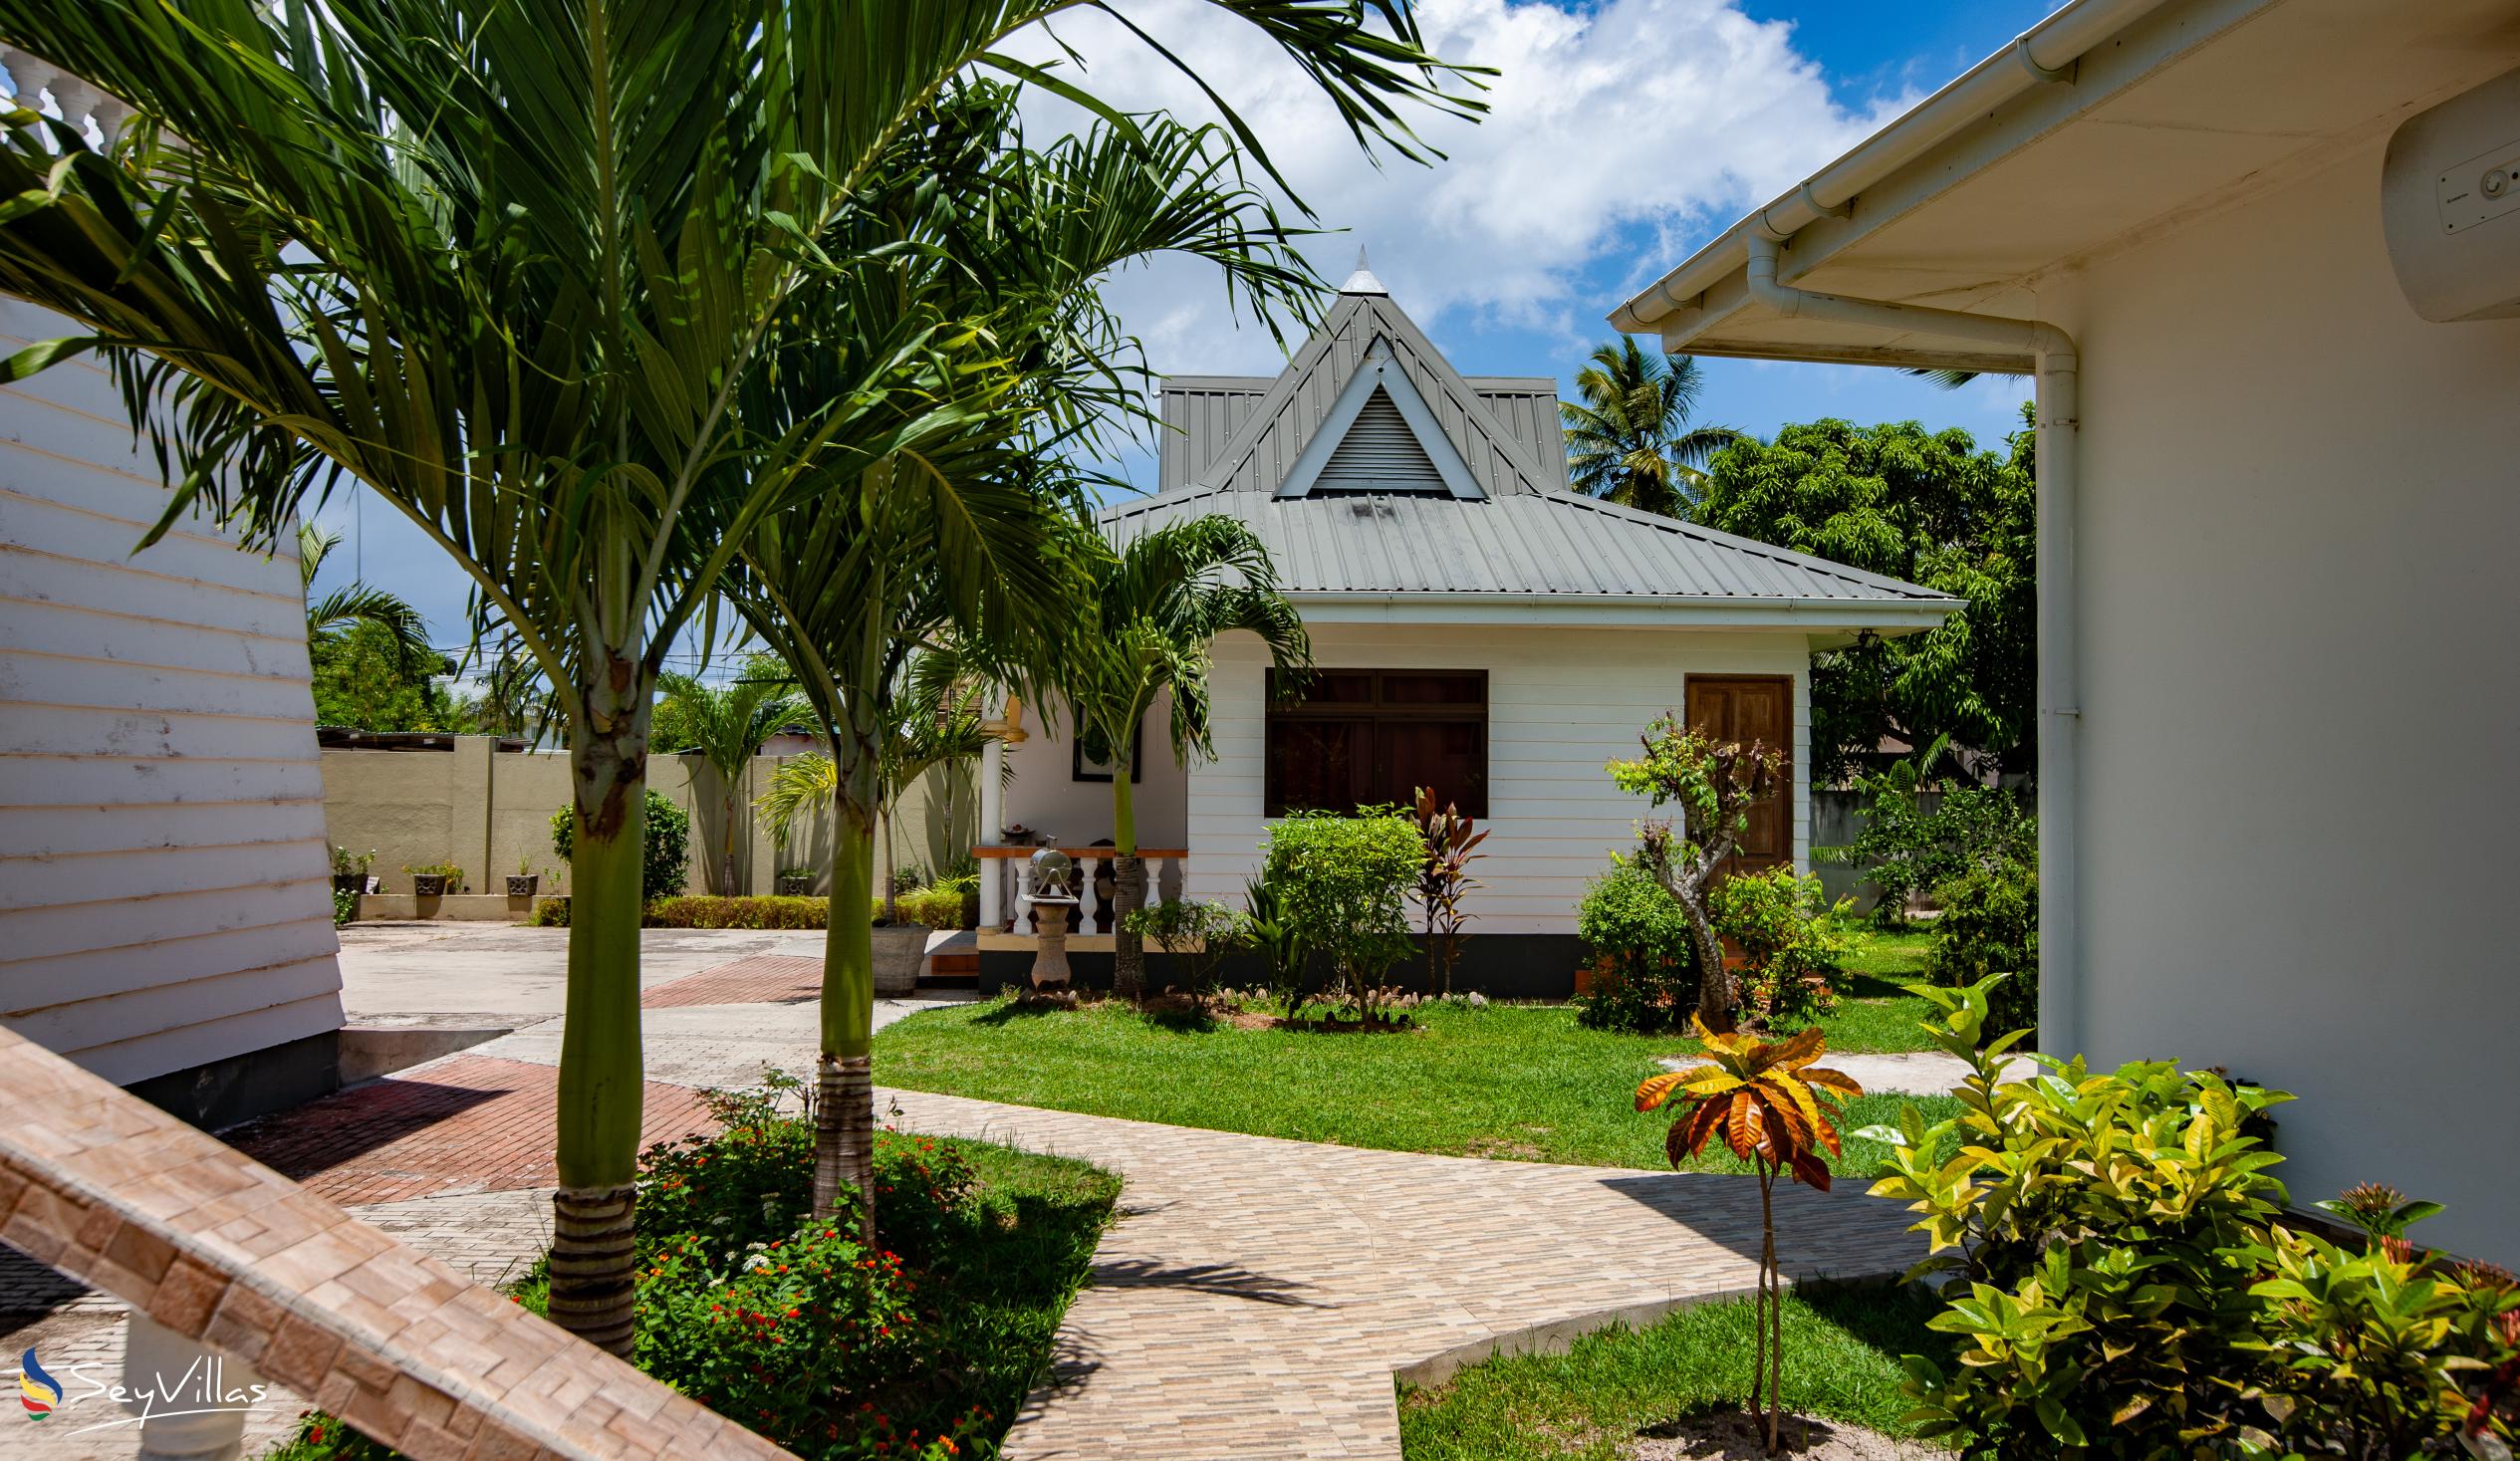 Foto 4: Villa Aya - Extérieur - Praslin (Seychelles)